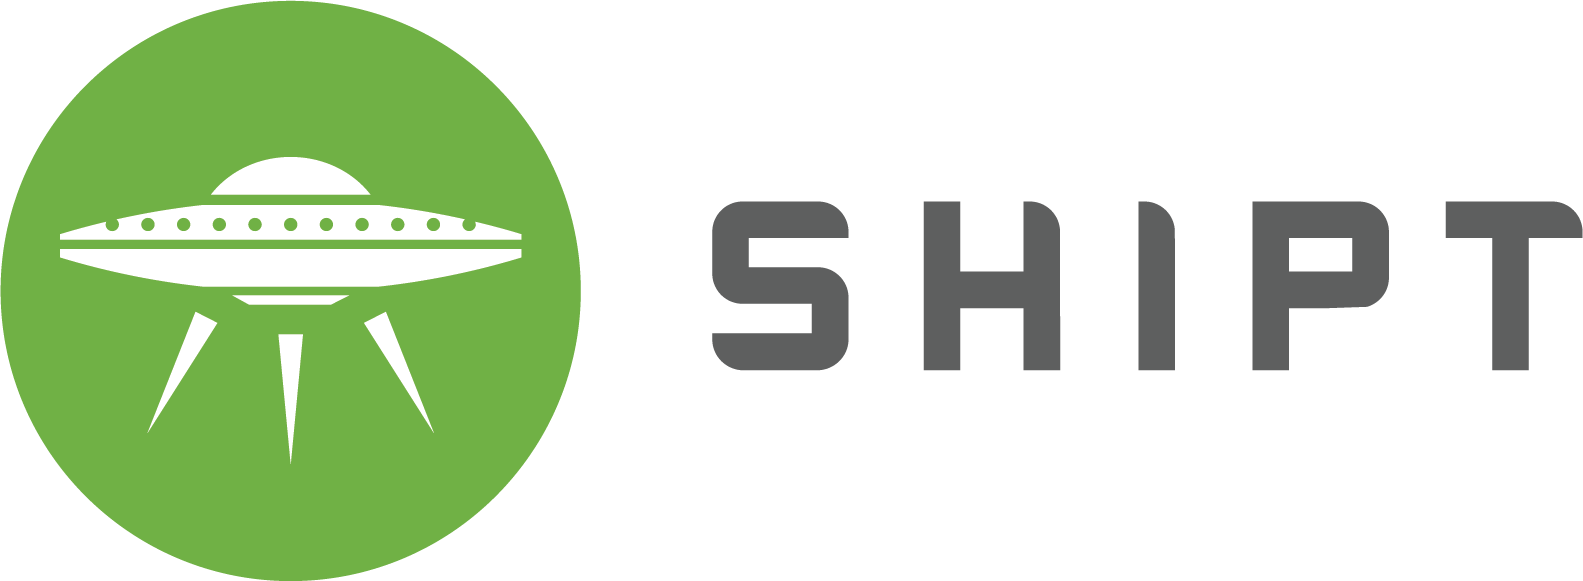 Shipt Logo - Shipt Logo Bay 510k